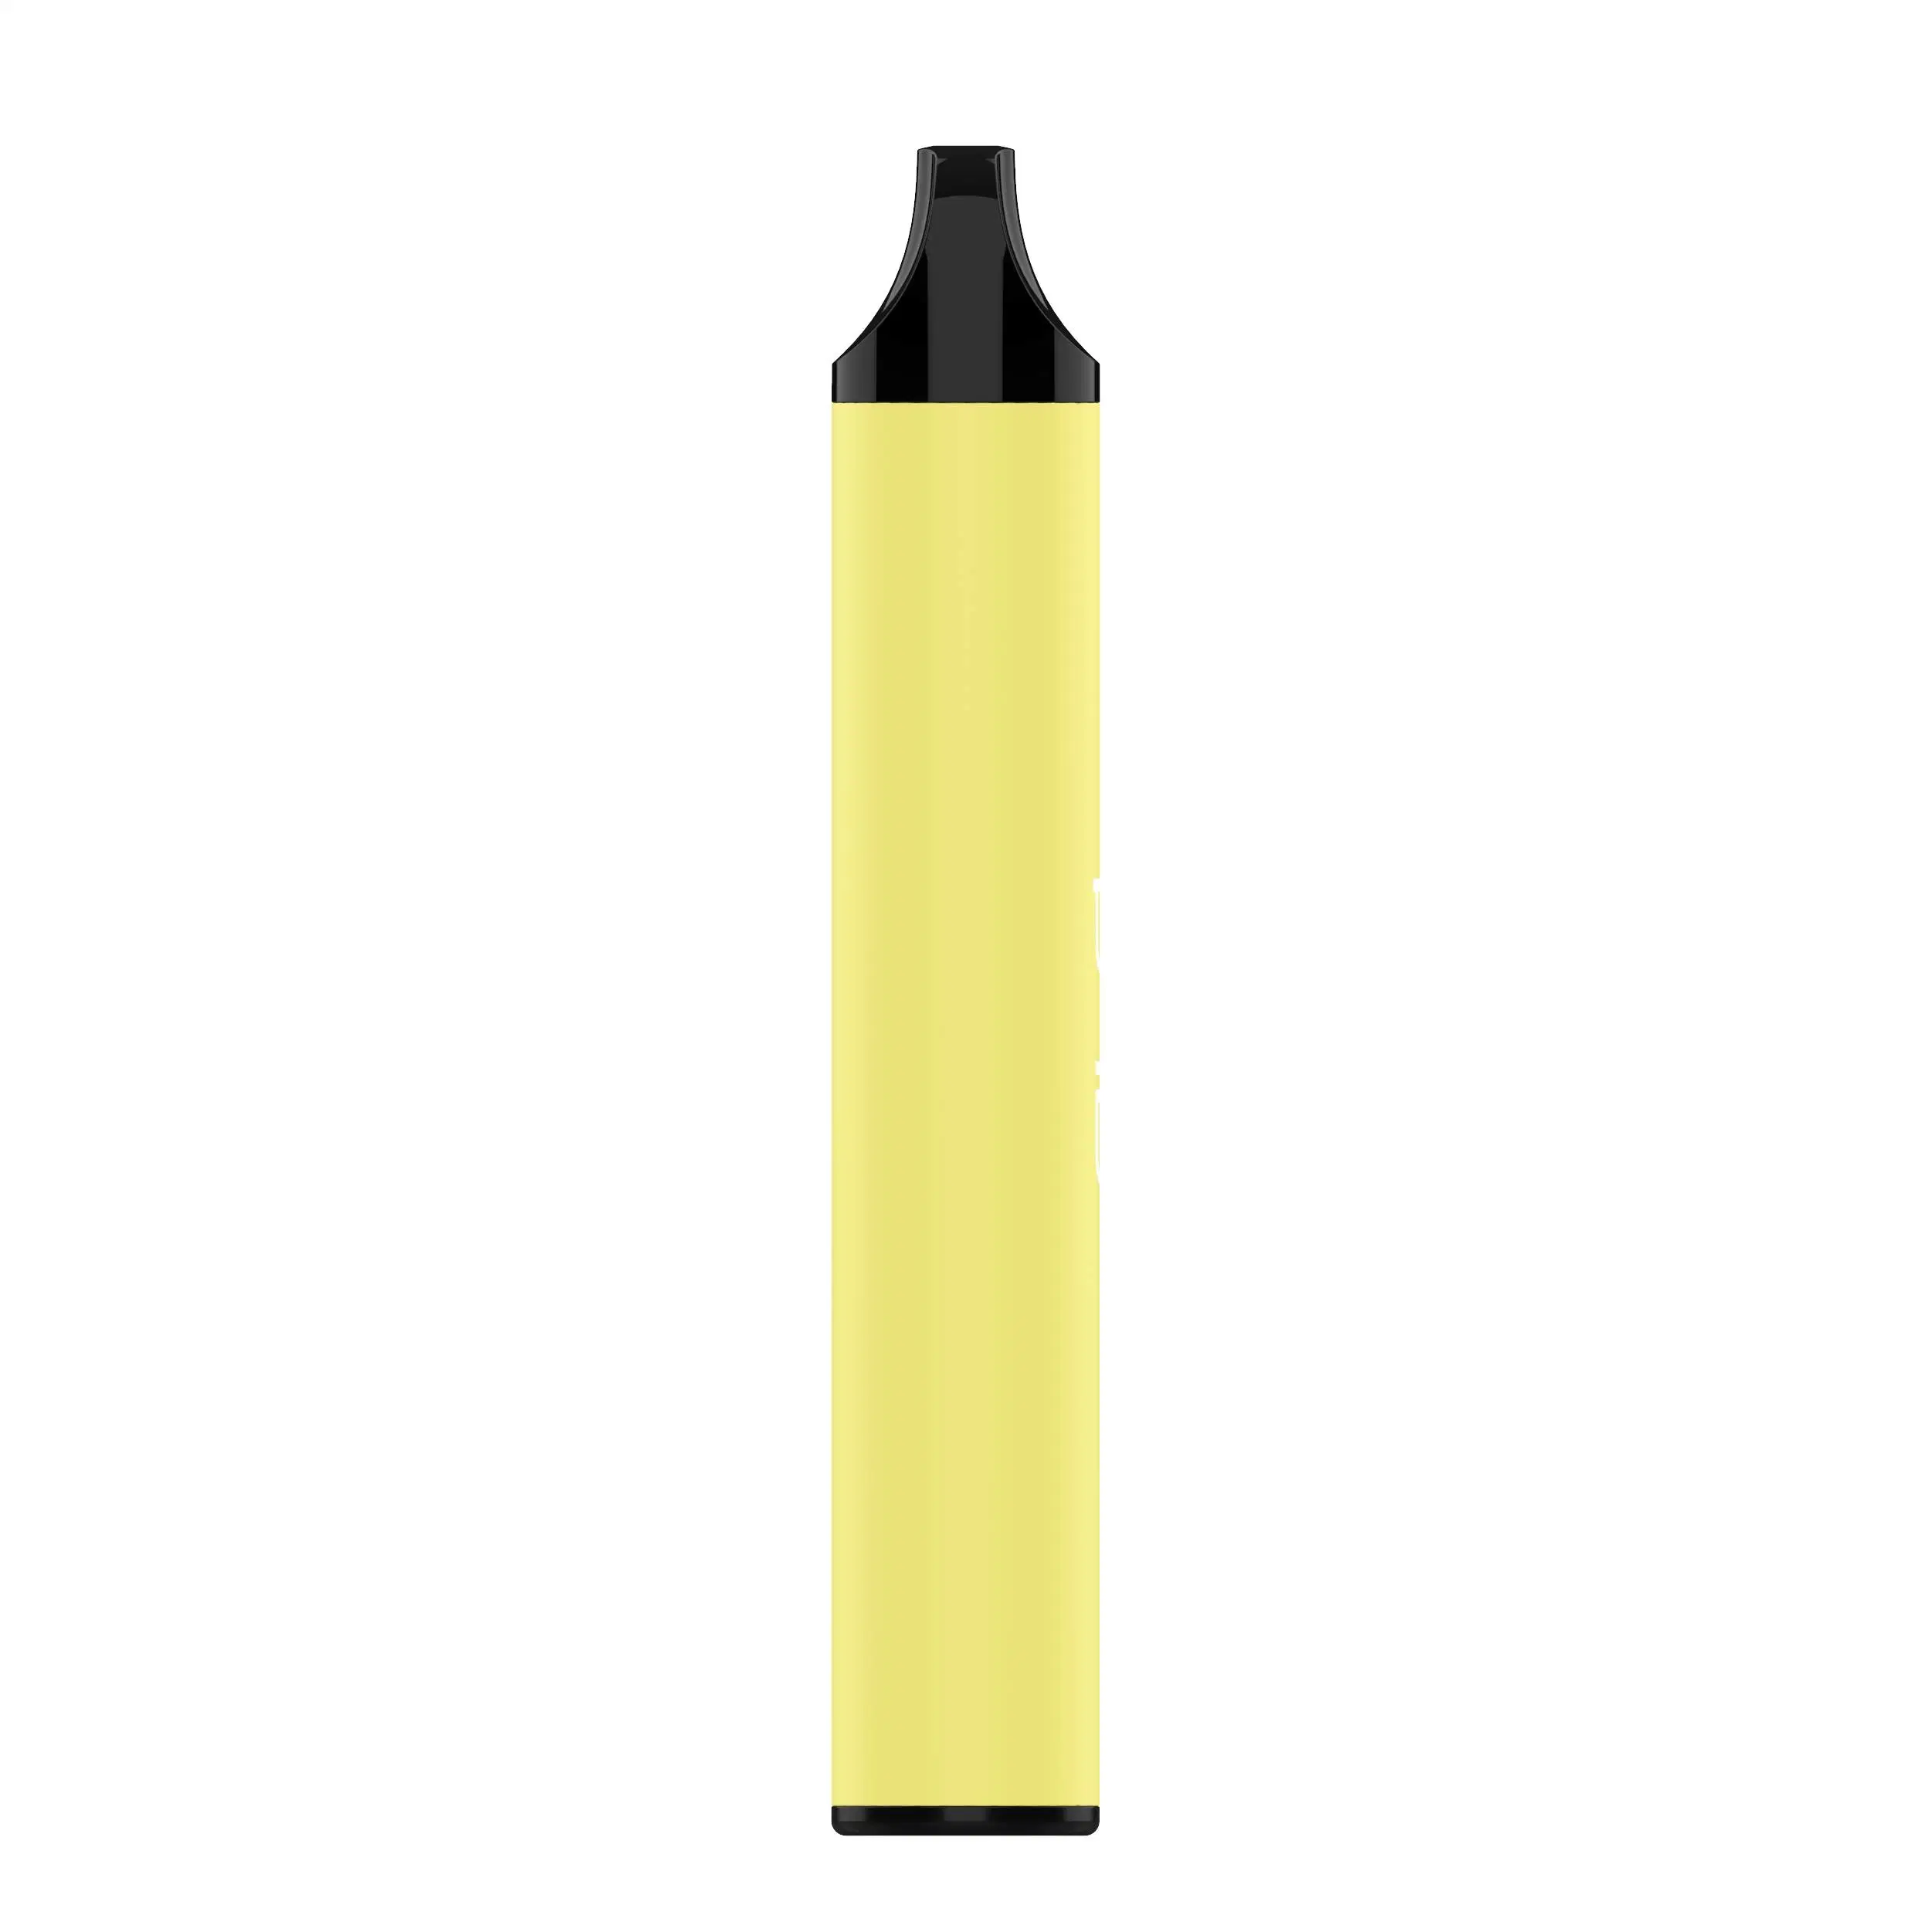 White Label Bienvenido Puff bar estilo Ecigarette Plus B2 Plus Pen Vape desechables